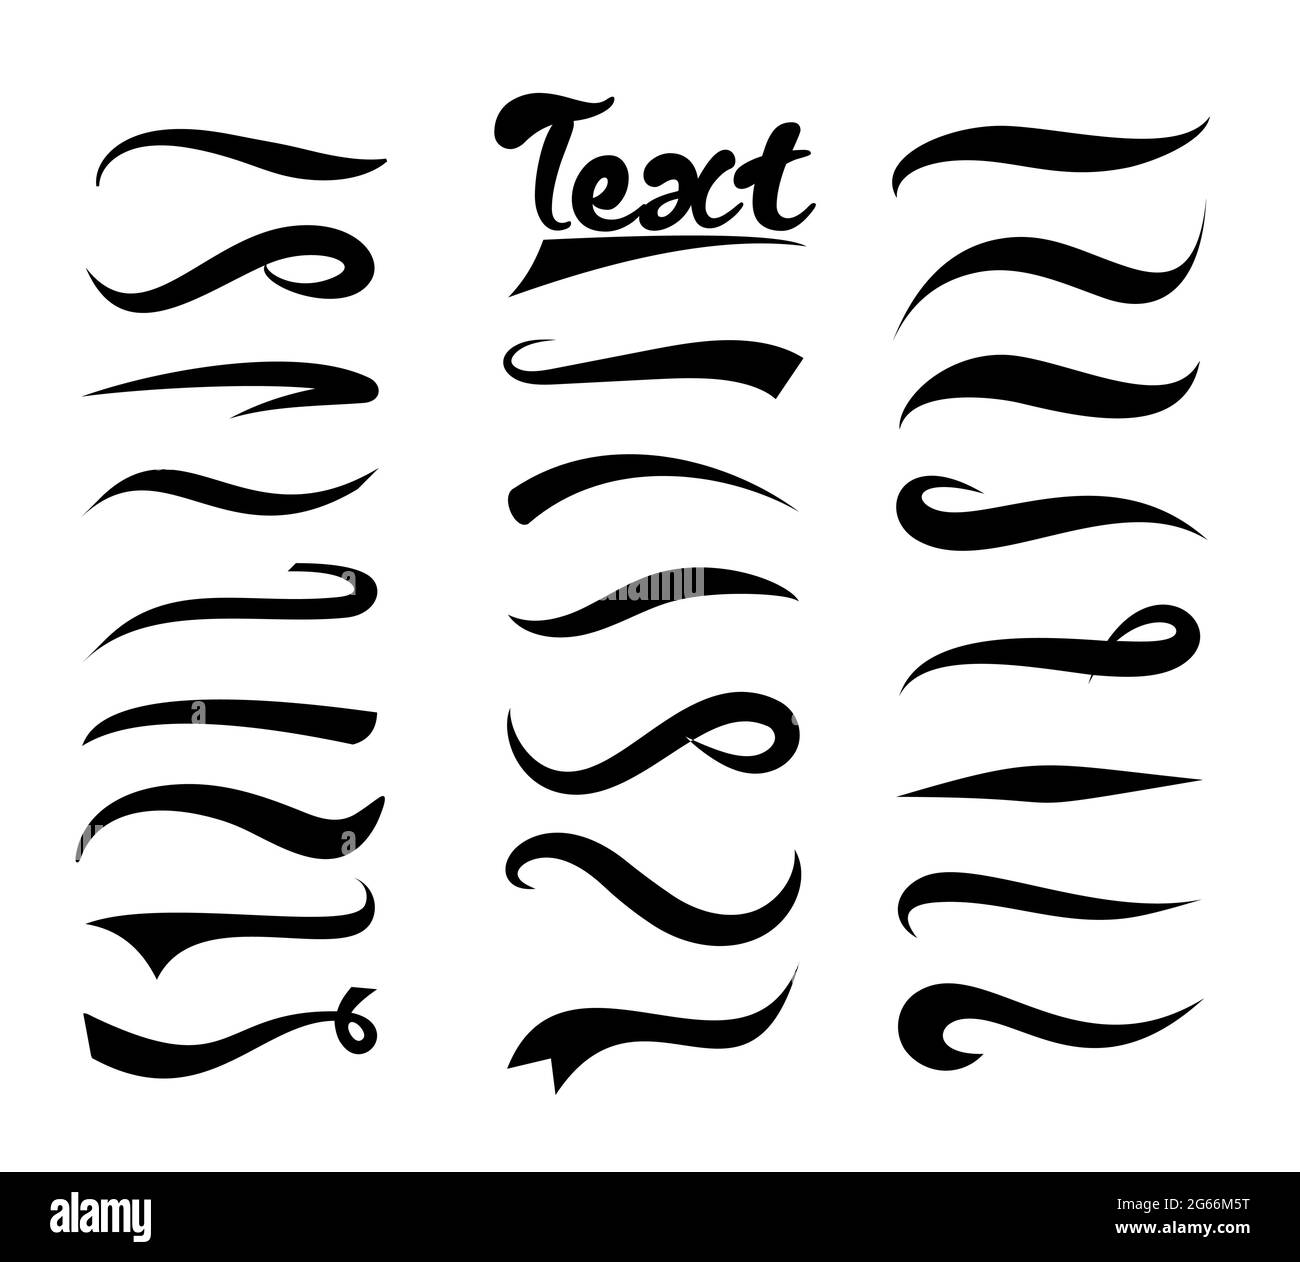 Illustrazione vettoriale insieme di elementi di testo, insieme Texting Tails. Swirling swash e swoosh. Elementi per testo e logo isolati su bianco Illustrazione Vettoriale